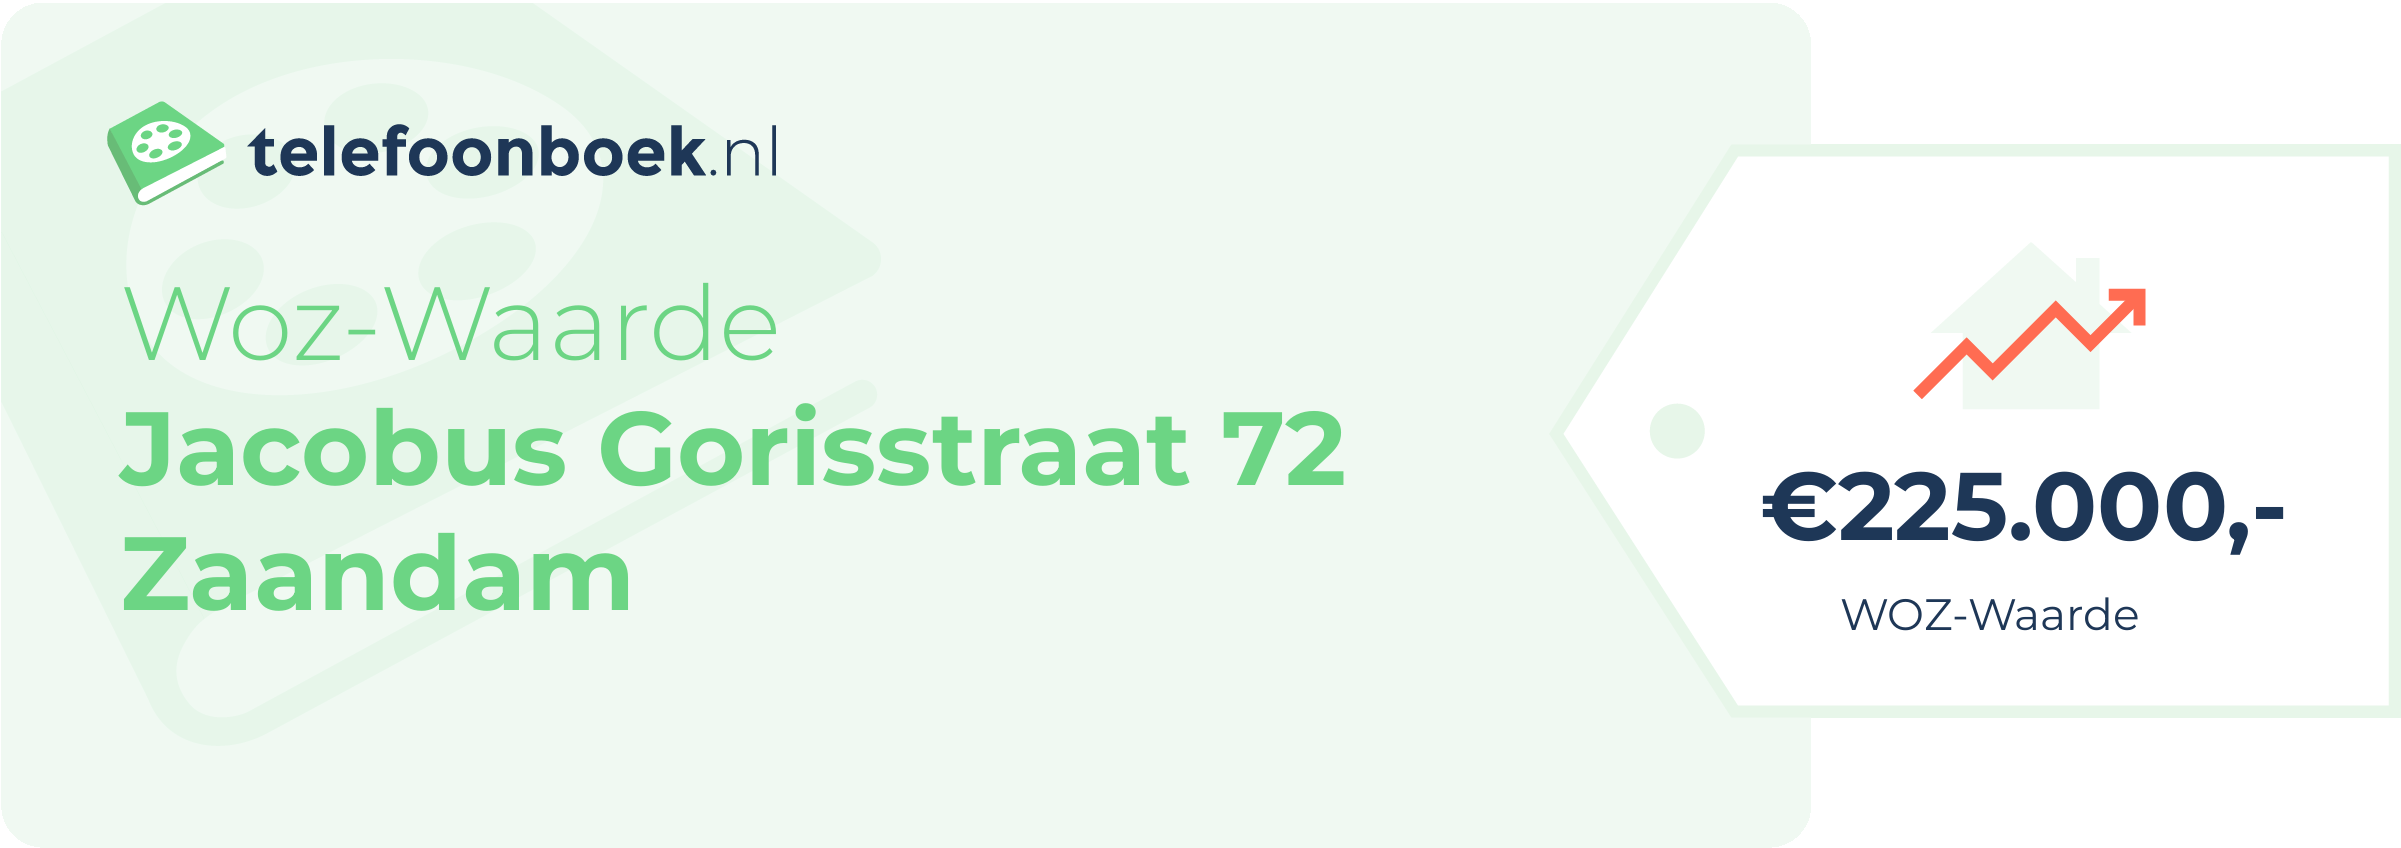 WOZ-waarde Jacobus Gorisstraat 72 Zaandam